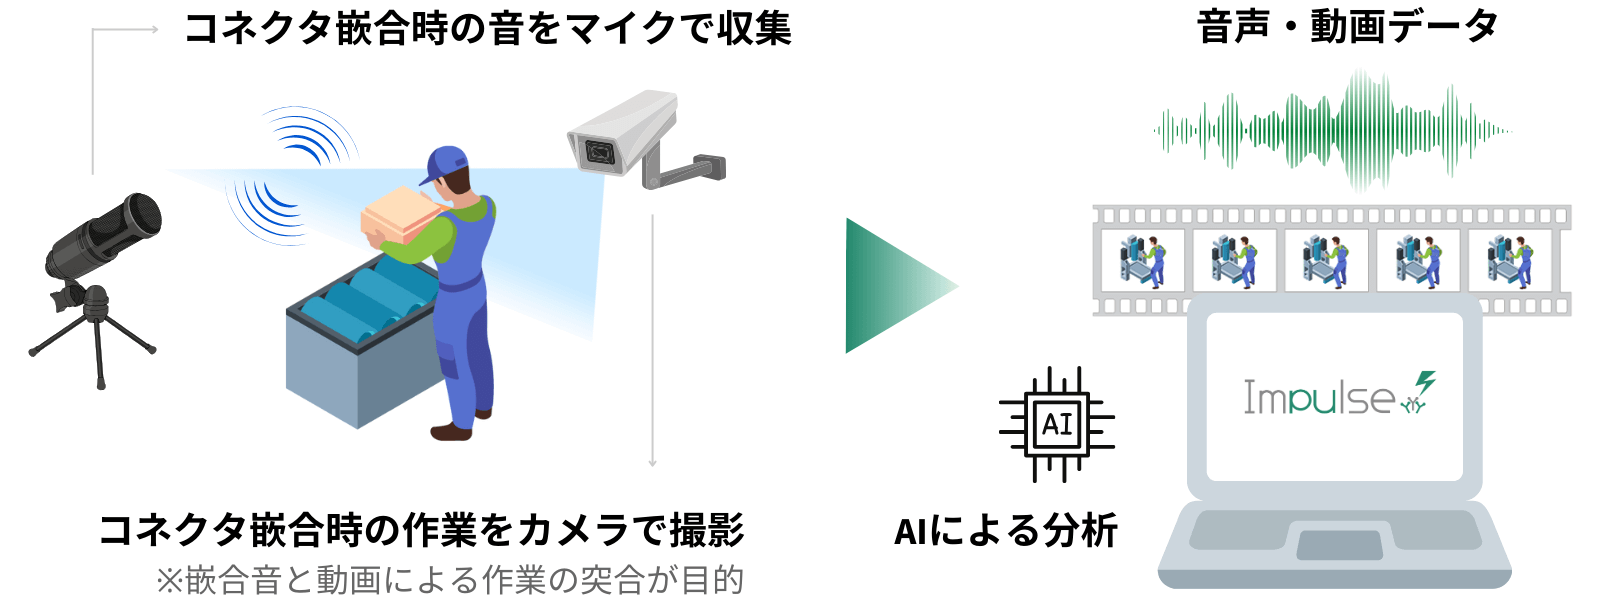 コネクタ嵌合音検査におけるAI利用イメージ